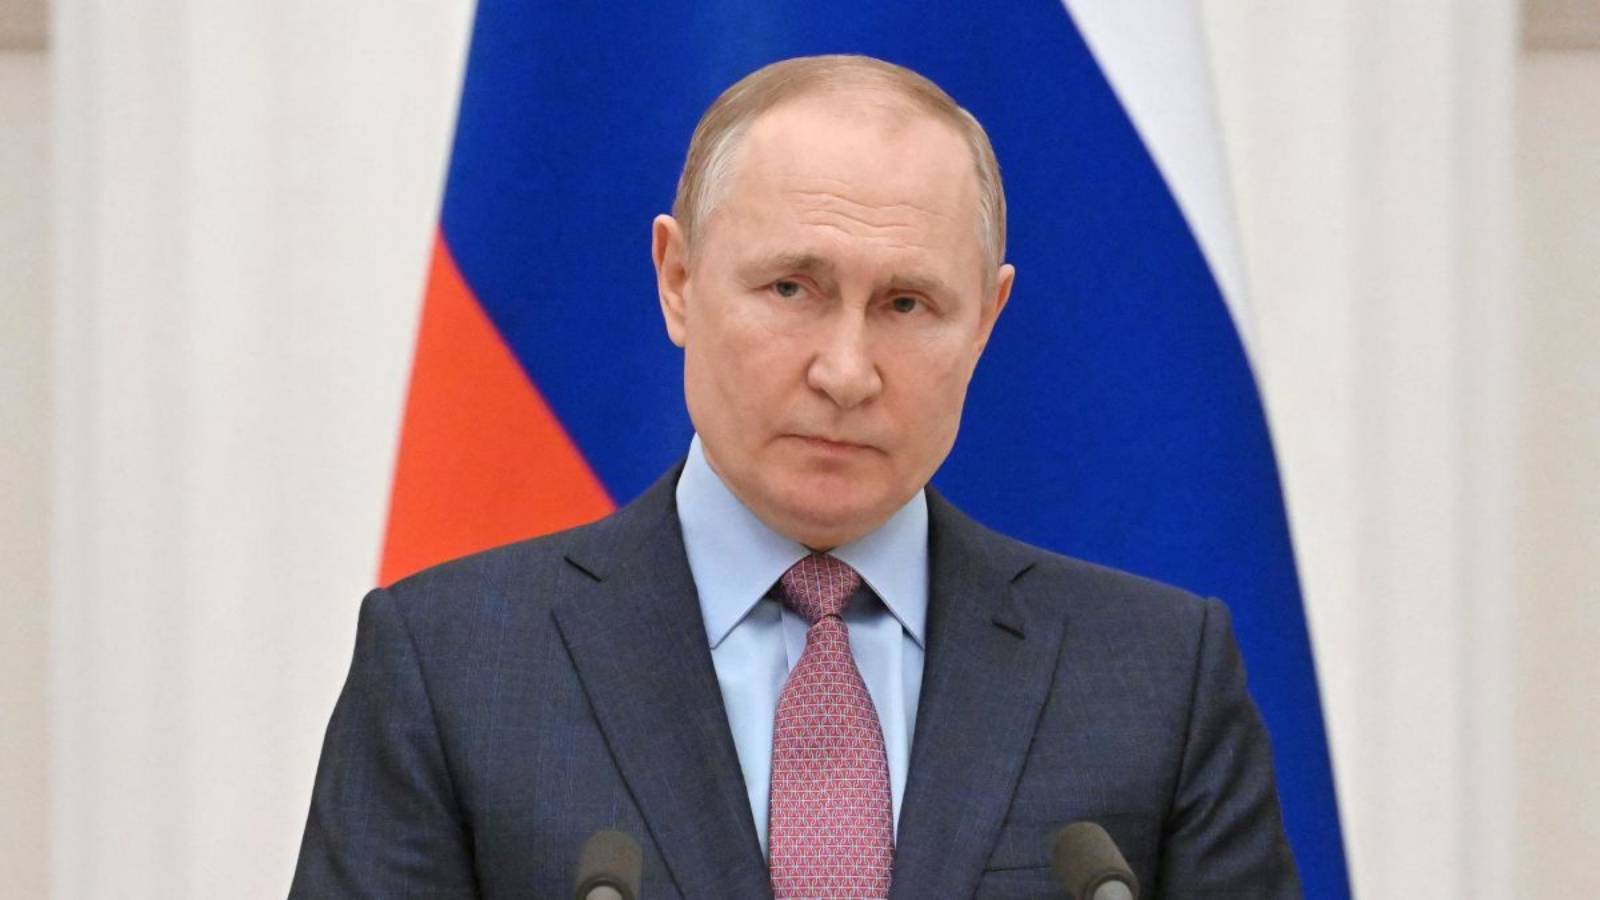 La decisione di Vladimir Putin di attaccare la Transnistria